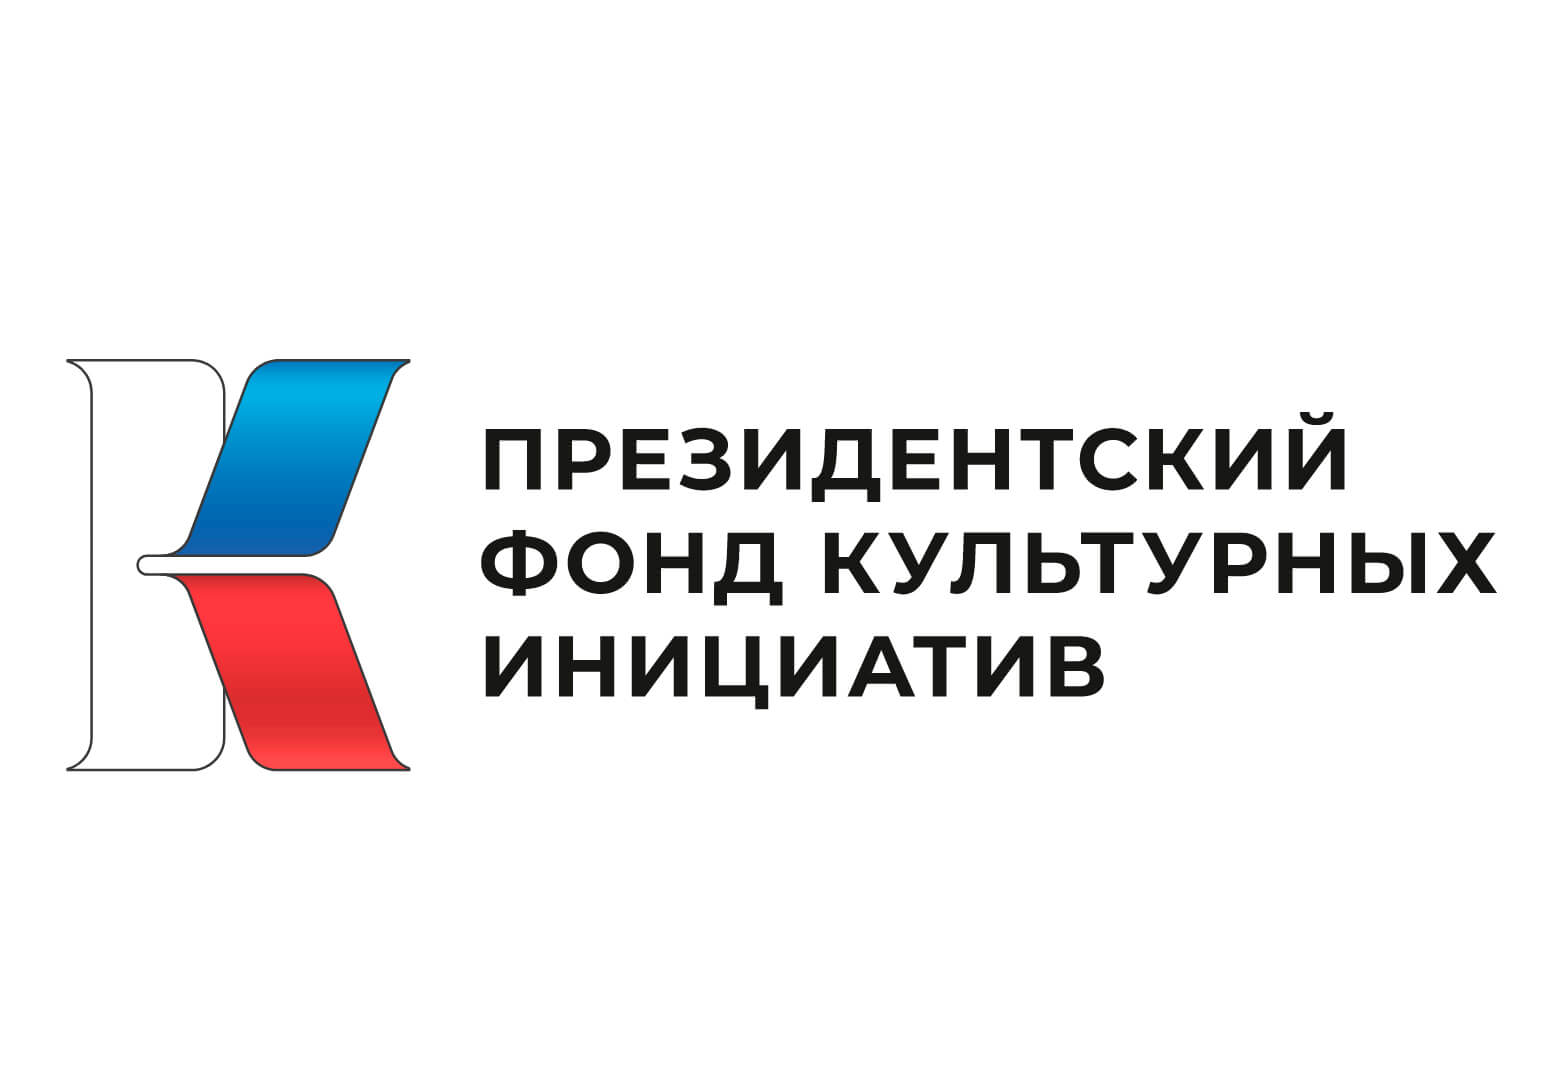 В ДНР Президентский фонд культурных инициатив поможет оснастить 63 учреждения культуры